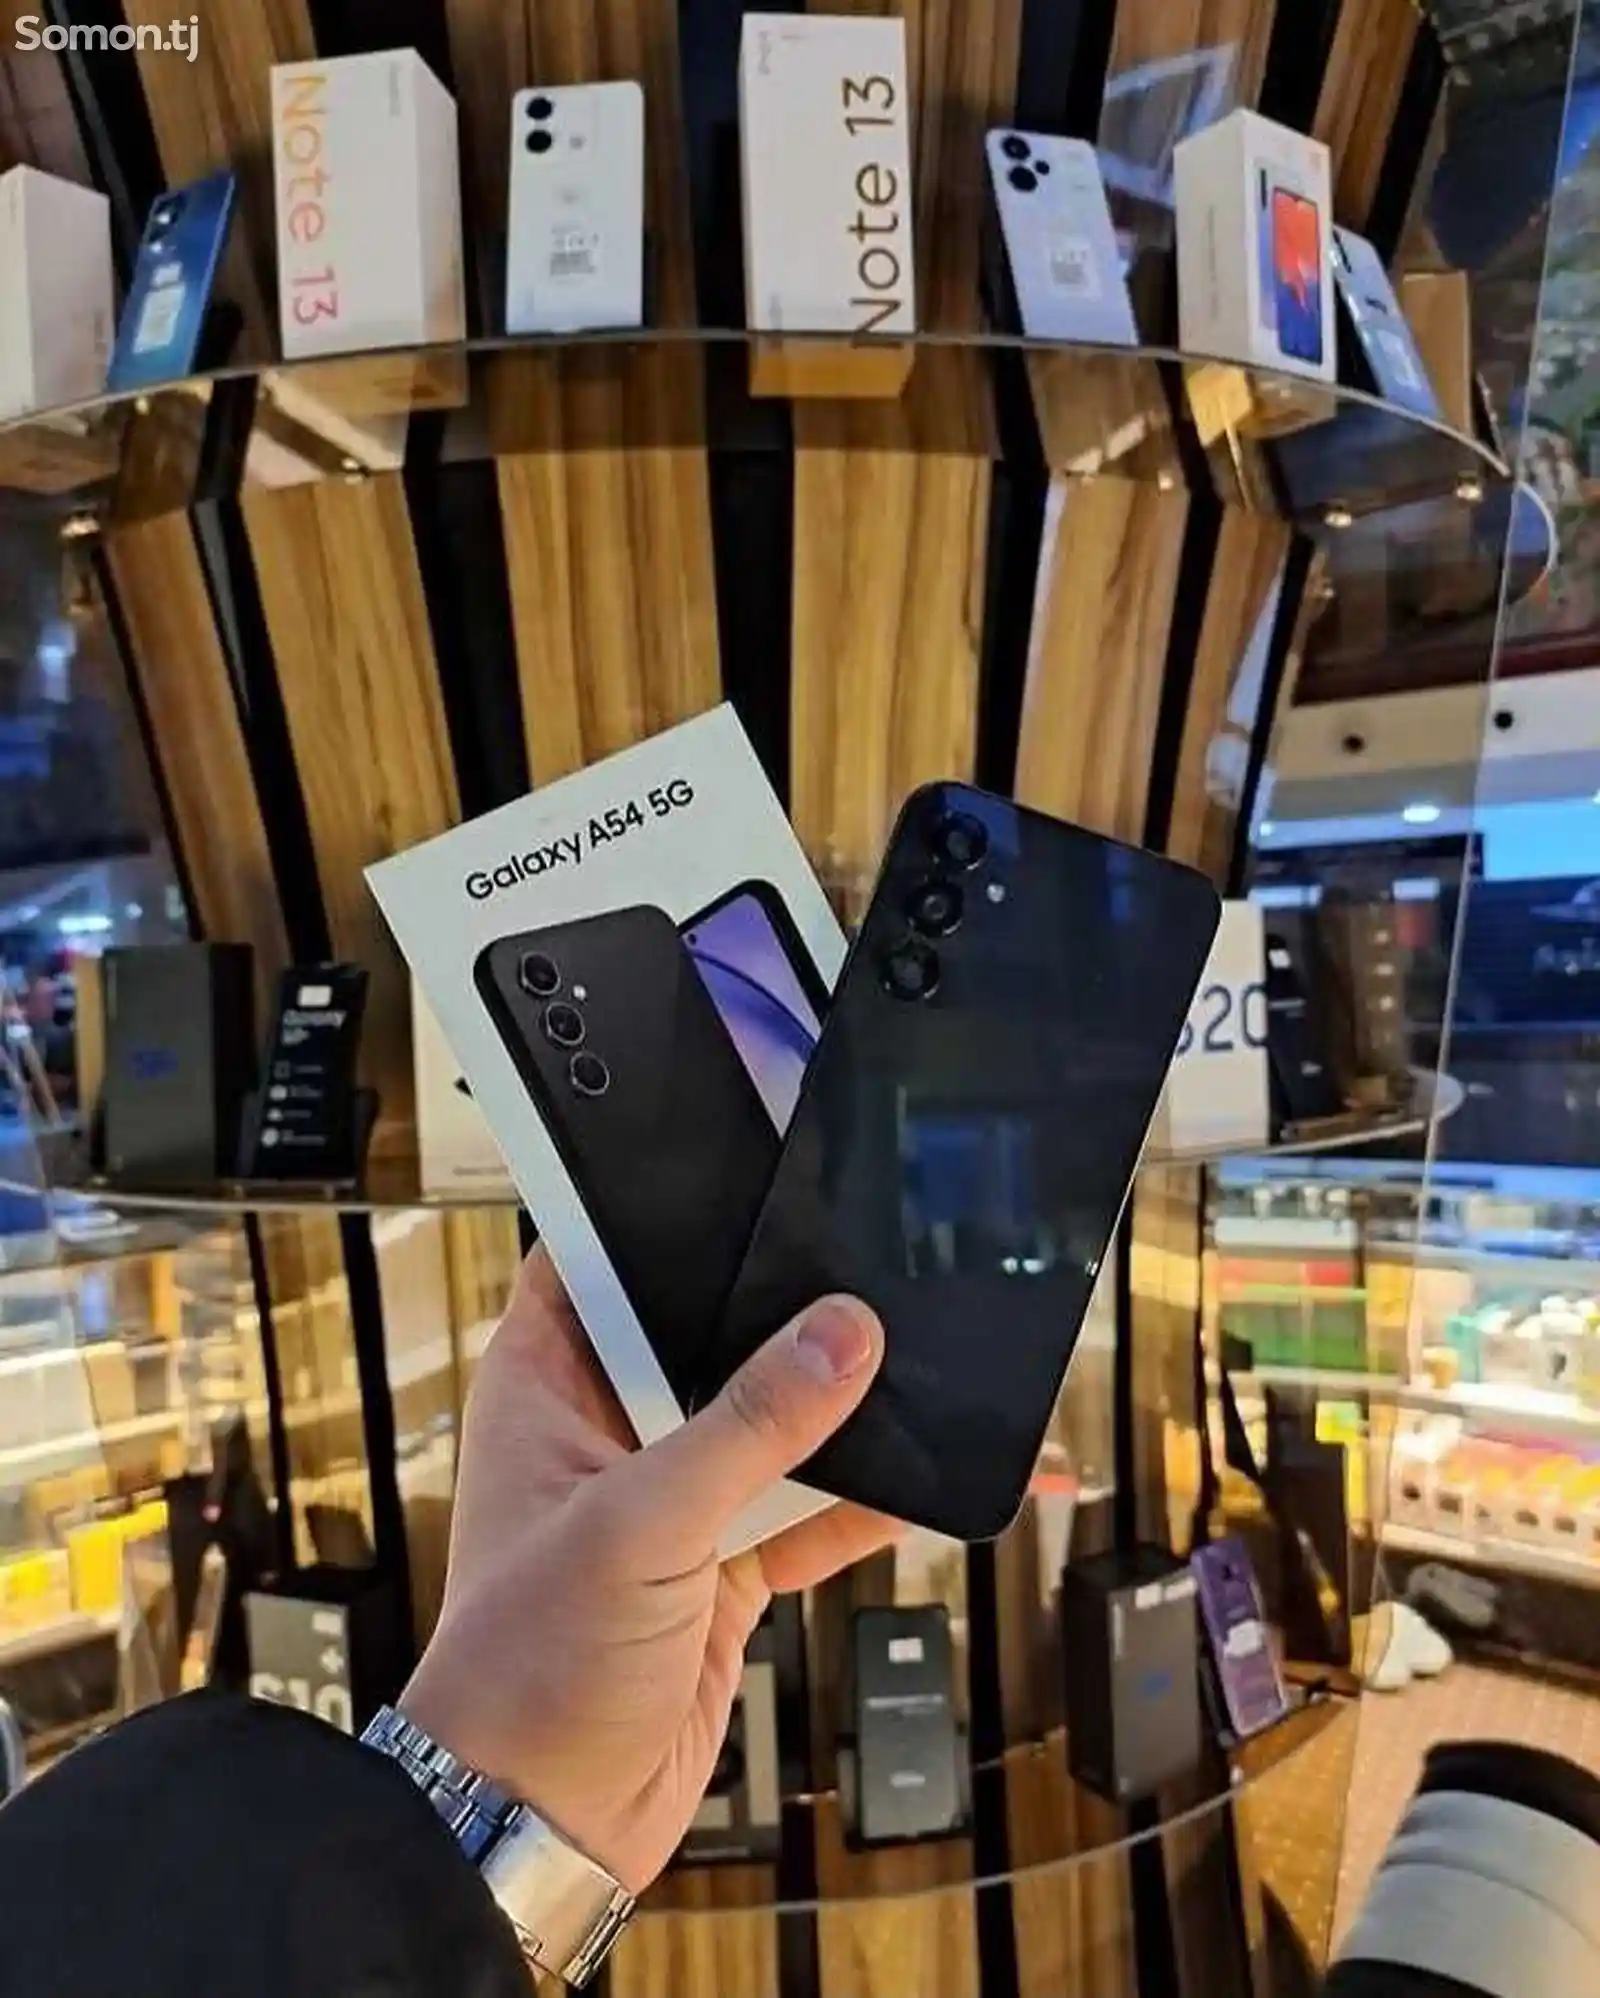 Samsung Galaxy A54 5G-3